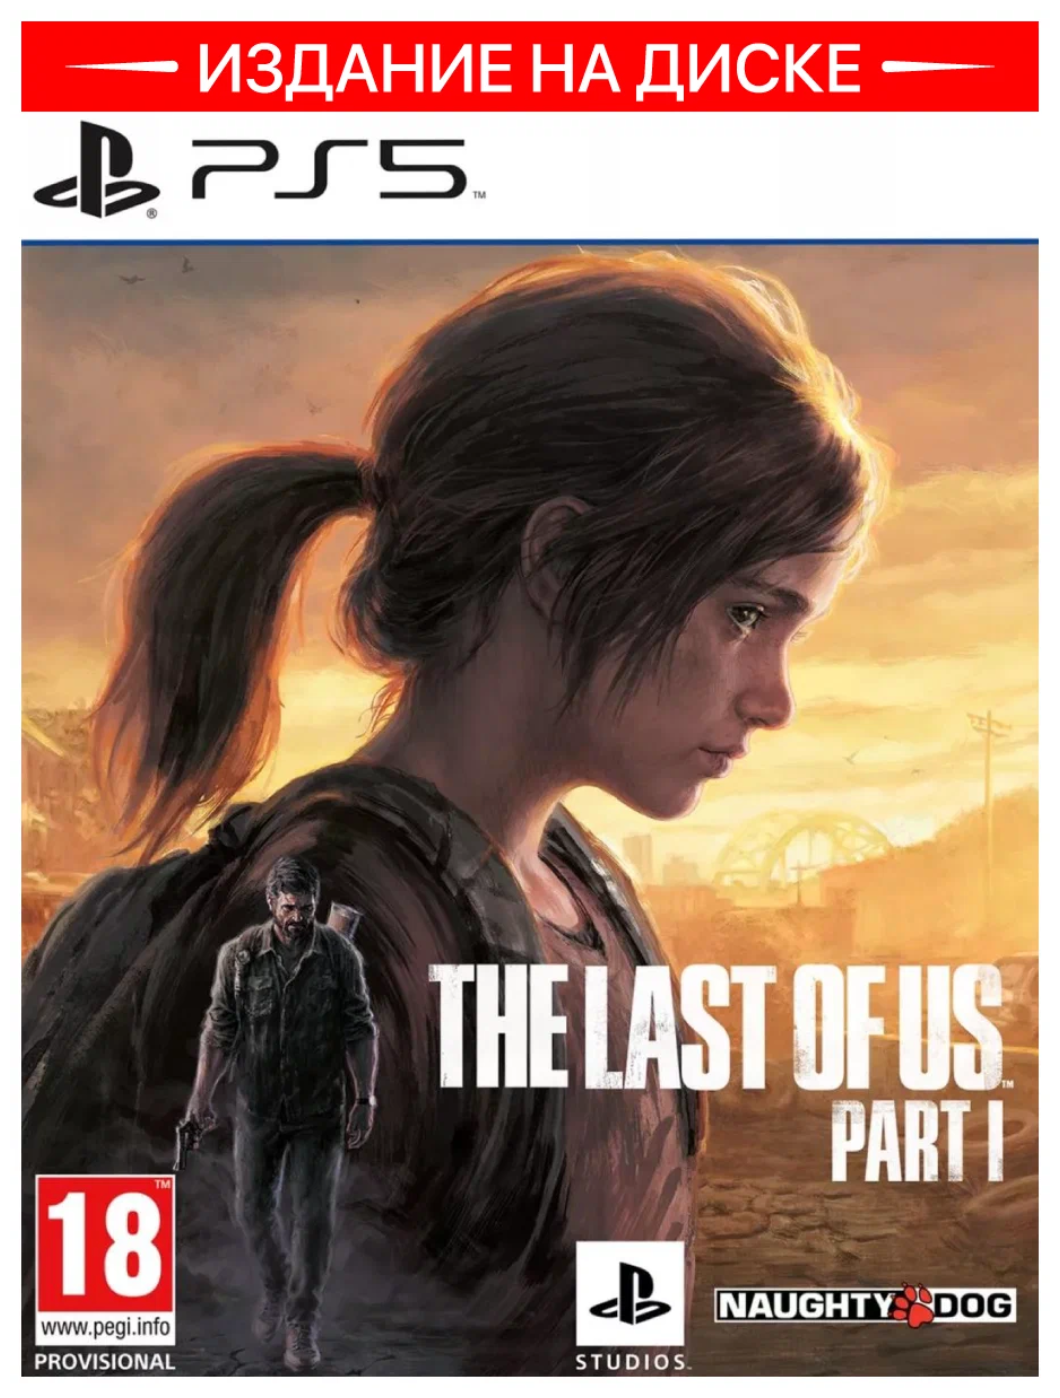 Купить Игра для PS5 The Last of Us part I/Одни из нас часть I